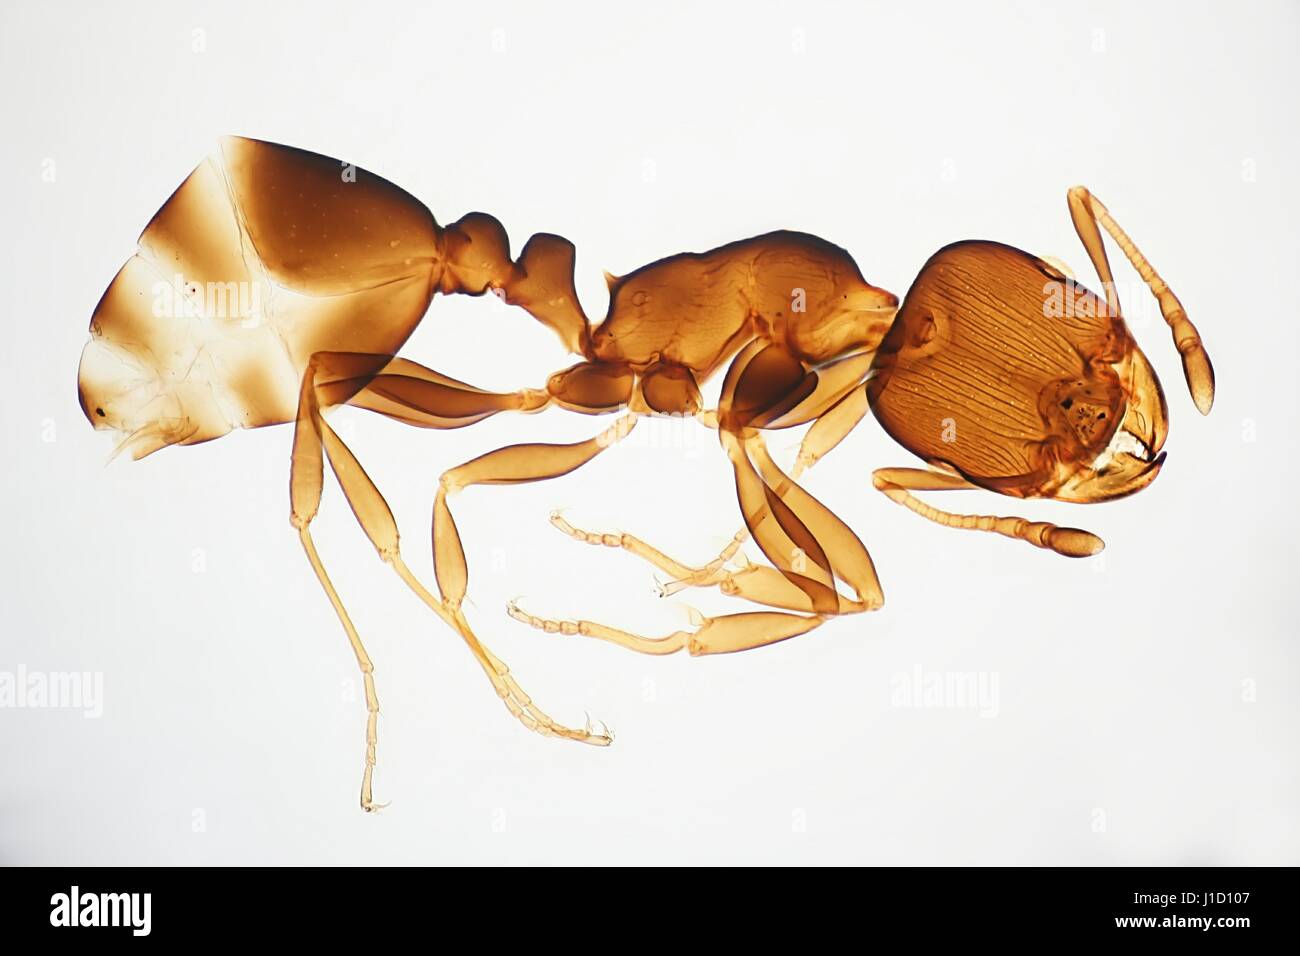 Exoskelett einer Ameise, mikroskopische Bild Stockfoto